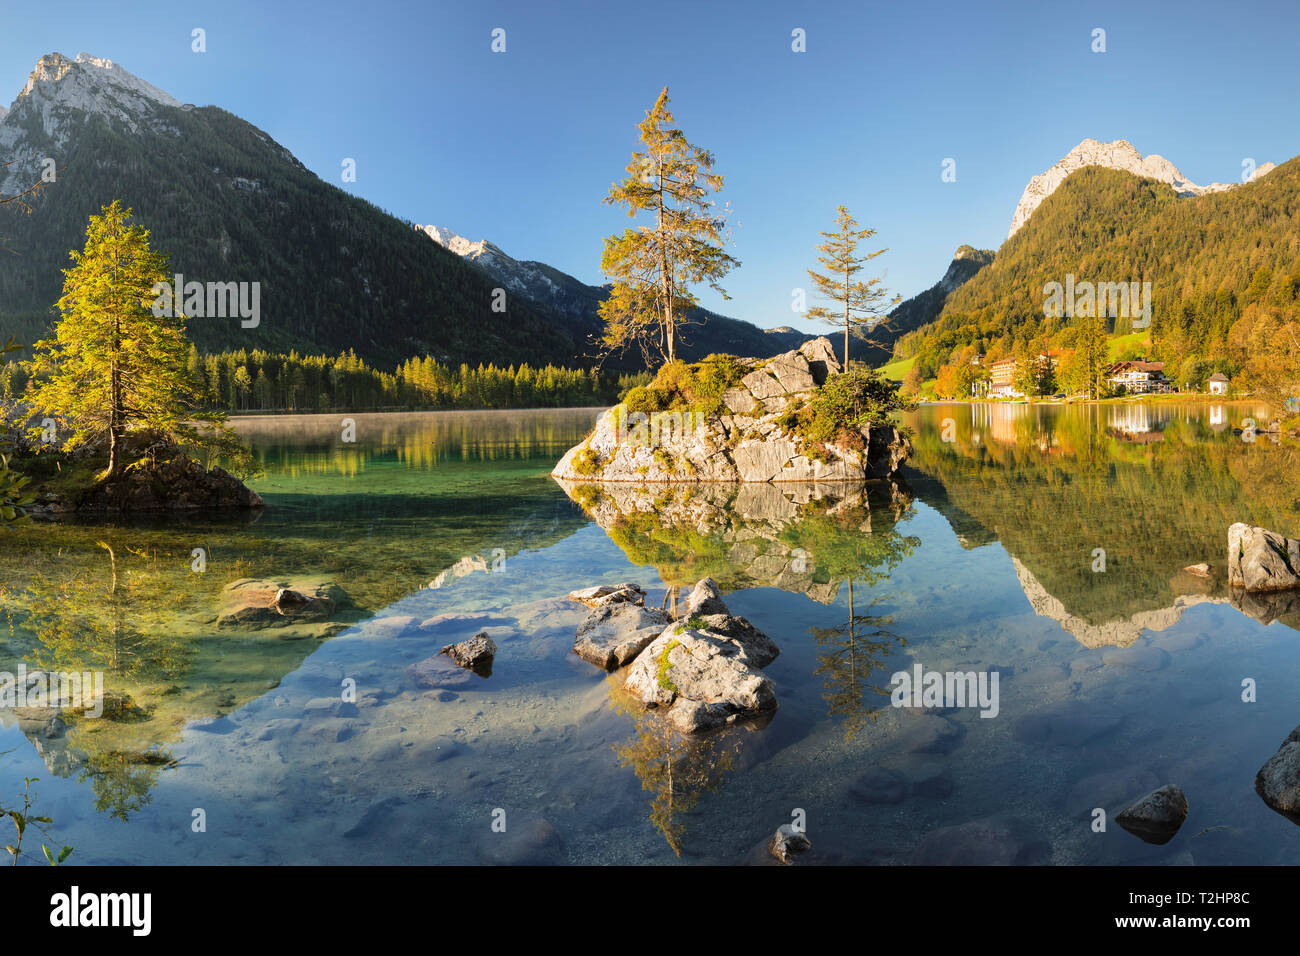 Le lac Hintersee dans le parc national de Berchtesgaden, Allemagne, Europe Banque D'Images